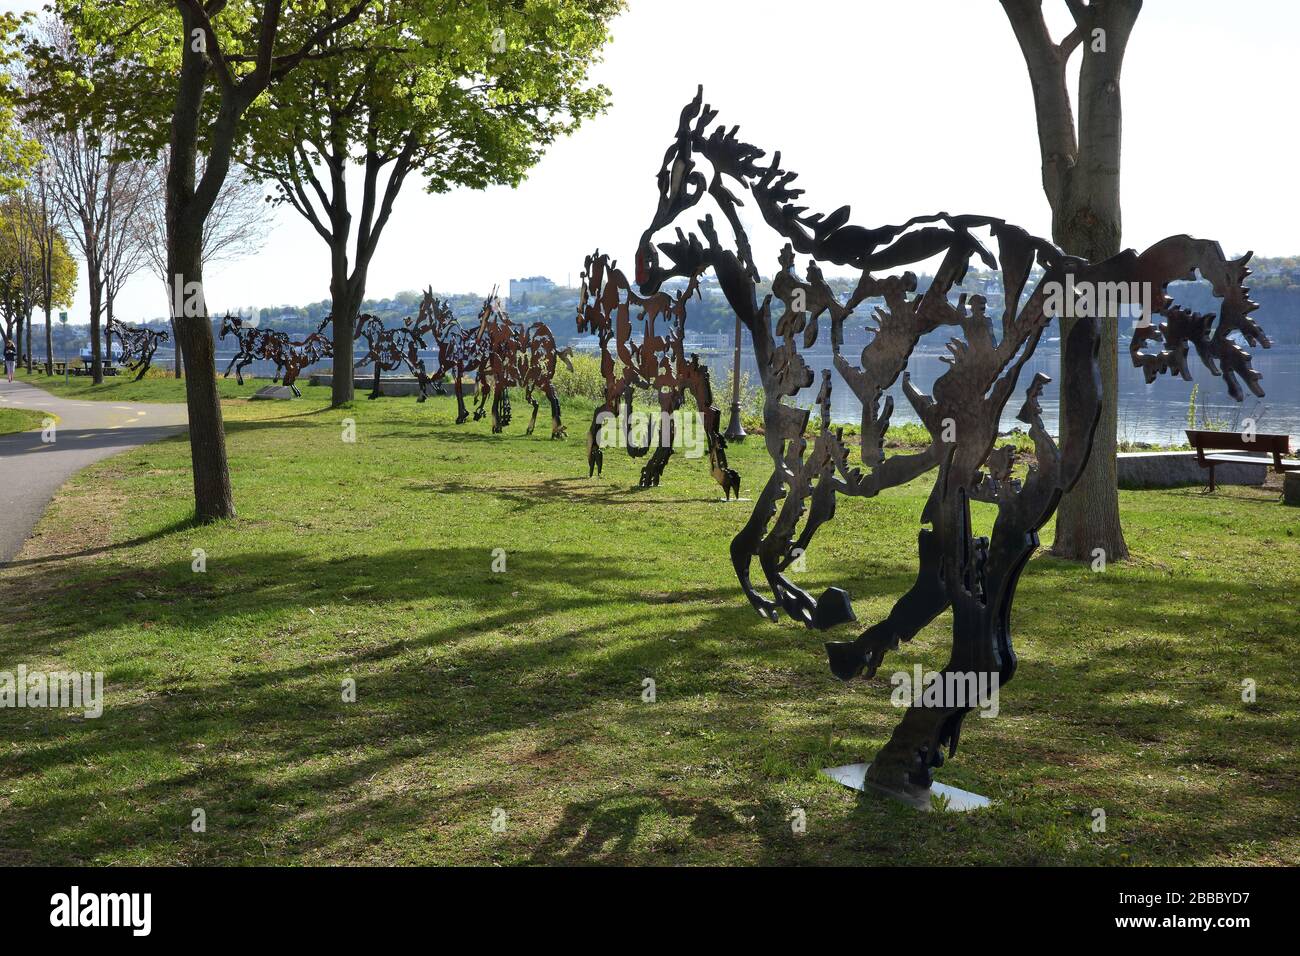 Otto cavalli da piastra in acciaio a grandezza naturale dello scultore Joe Fafard, dal titolo "Do Re mi fa Sol la si do", ciascuno con tagli raffiguranti scene e figure del passato del Quebec. Notre-Dame-de-la-Garde Park, Champlain Blvd, Quebec City, Quebec, Canada Foto Stock